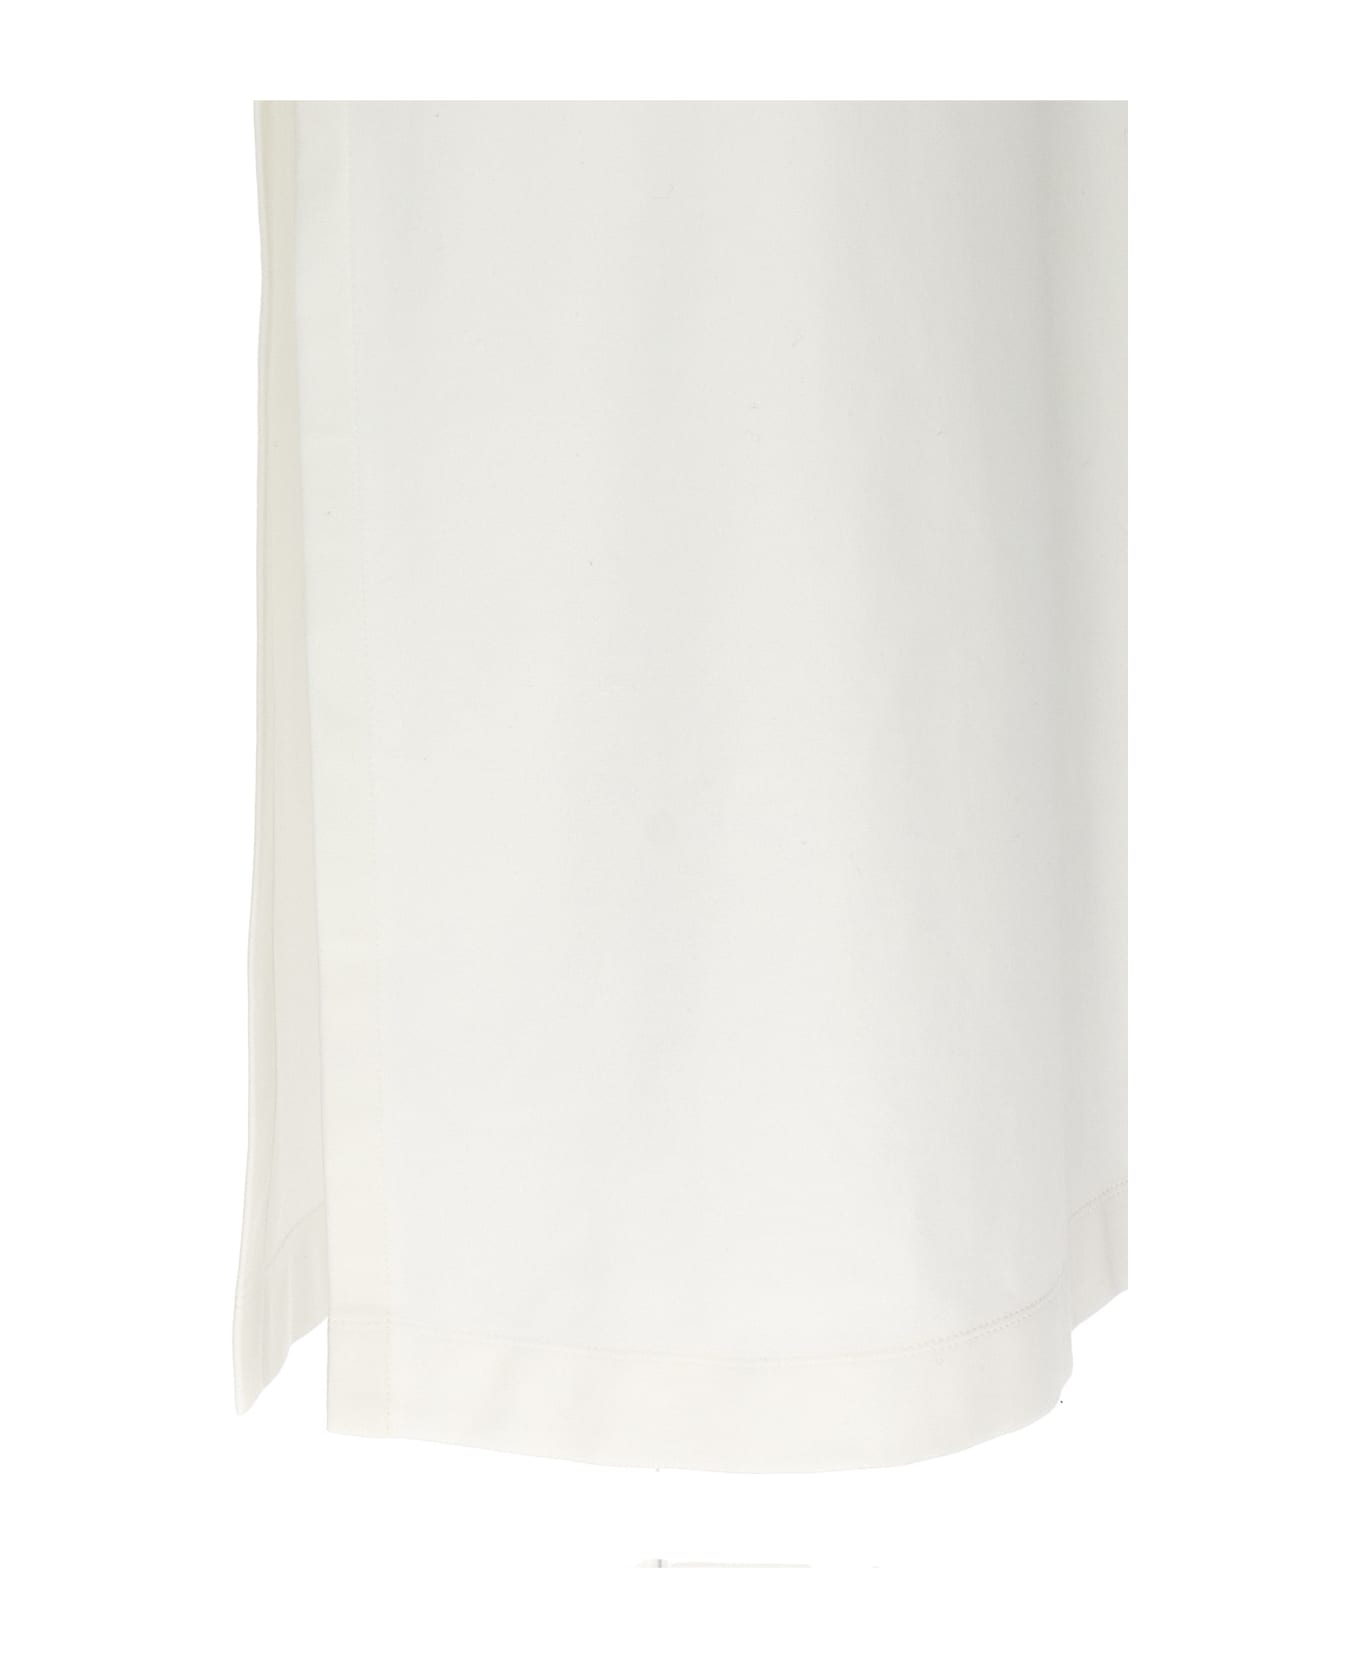 Brunello Cucinelli 'monile' Maxi Dress - White